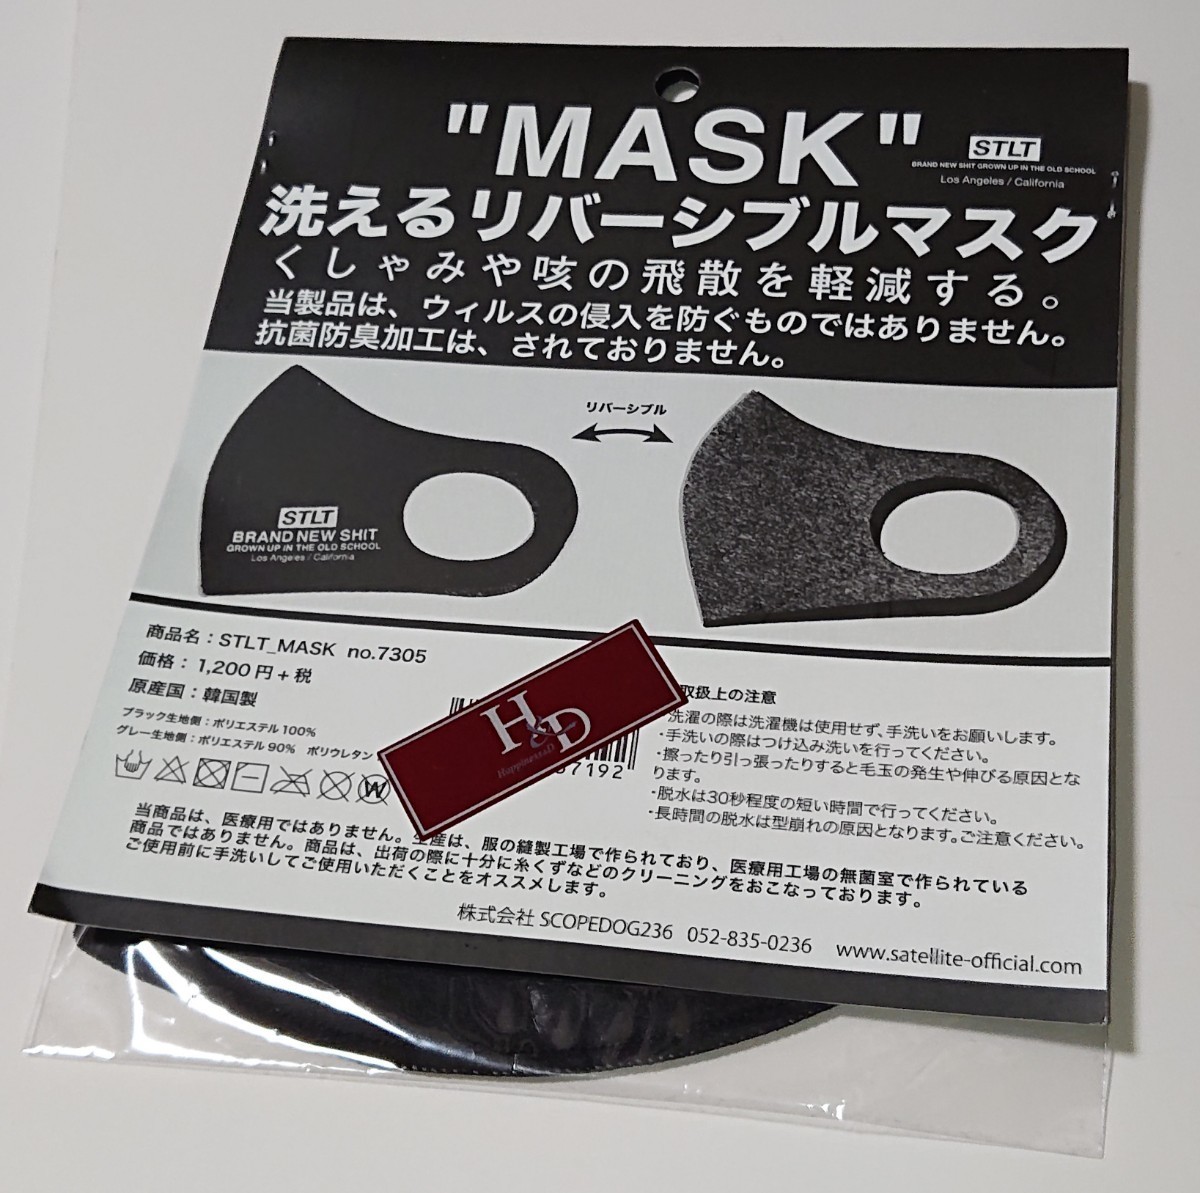 [ бесплатная доставка ][ новый товар нераспечатанный ] полиэстер маска чёрный цвет черный двусторонний обычная цена 1200 иен 